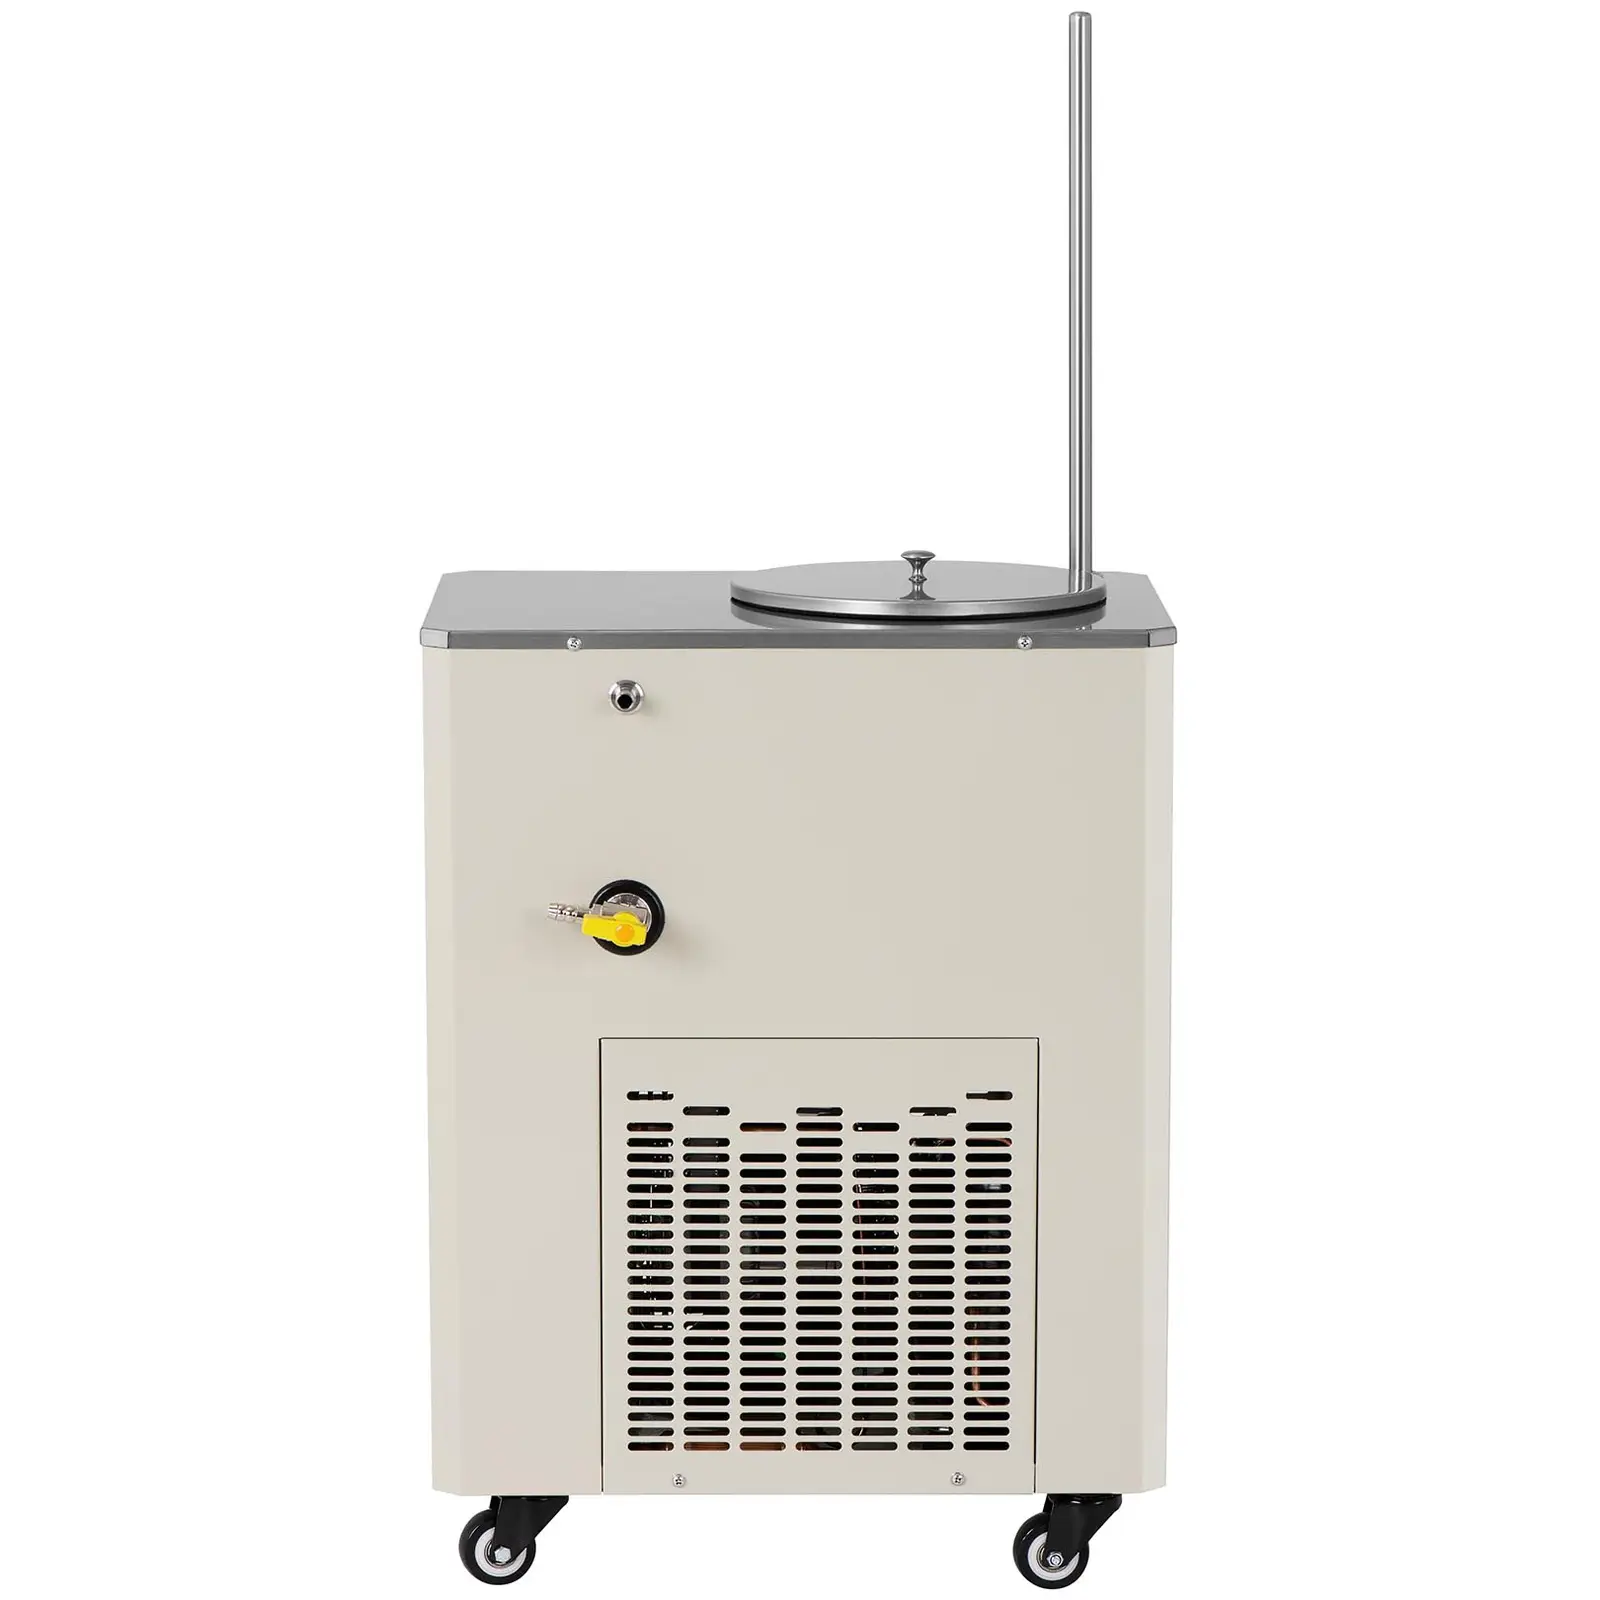 Rinfrescatore aria a circolazione - Compressore: 726 W - Da -20 a 20℃ - 20 L/min